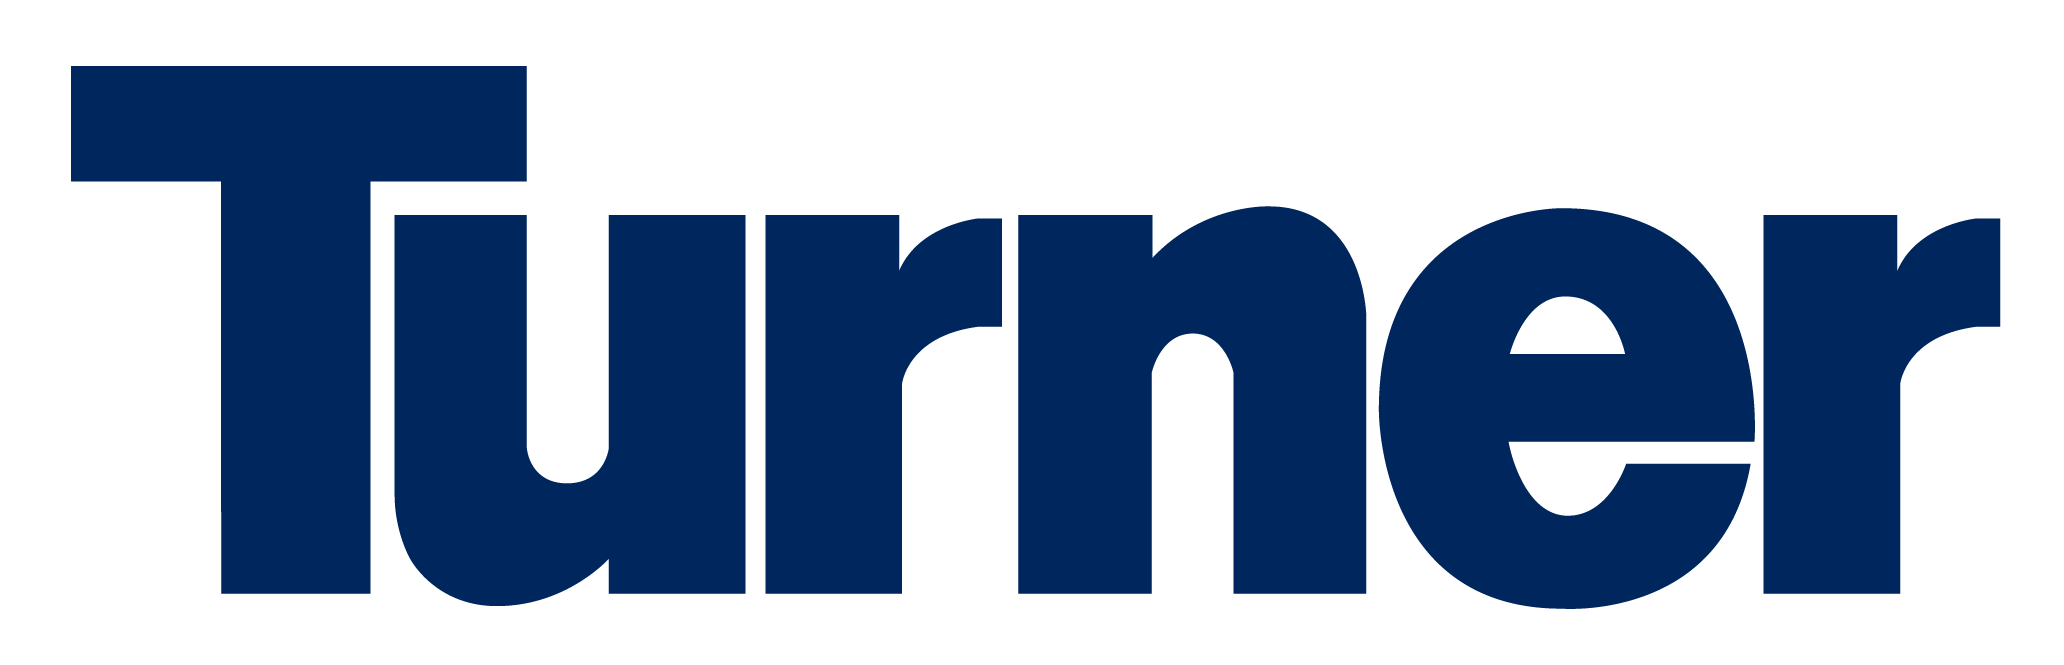 Turner Construction Co Company Logo